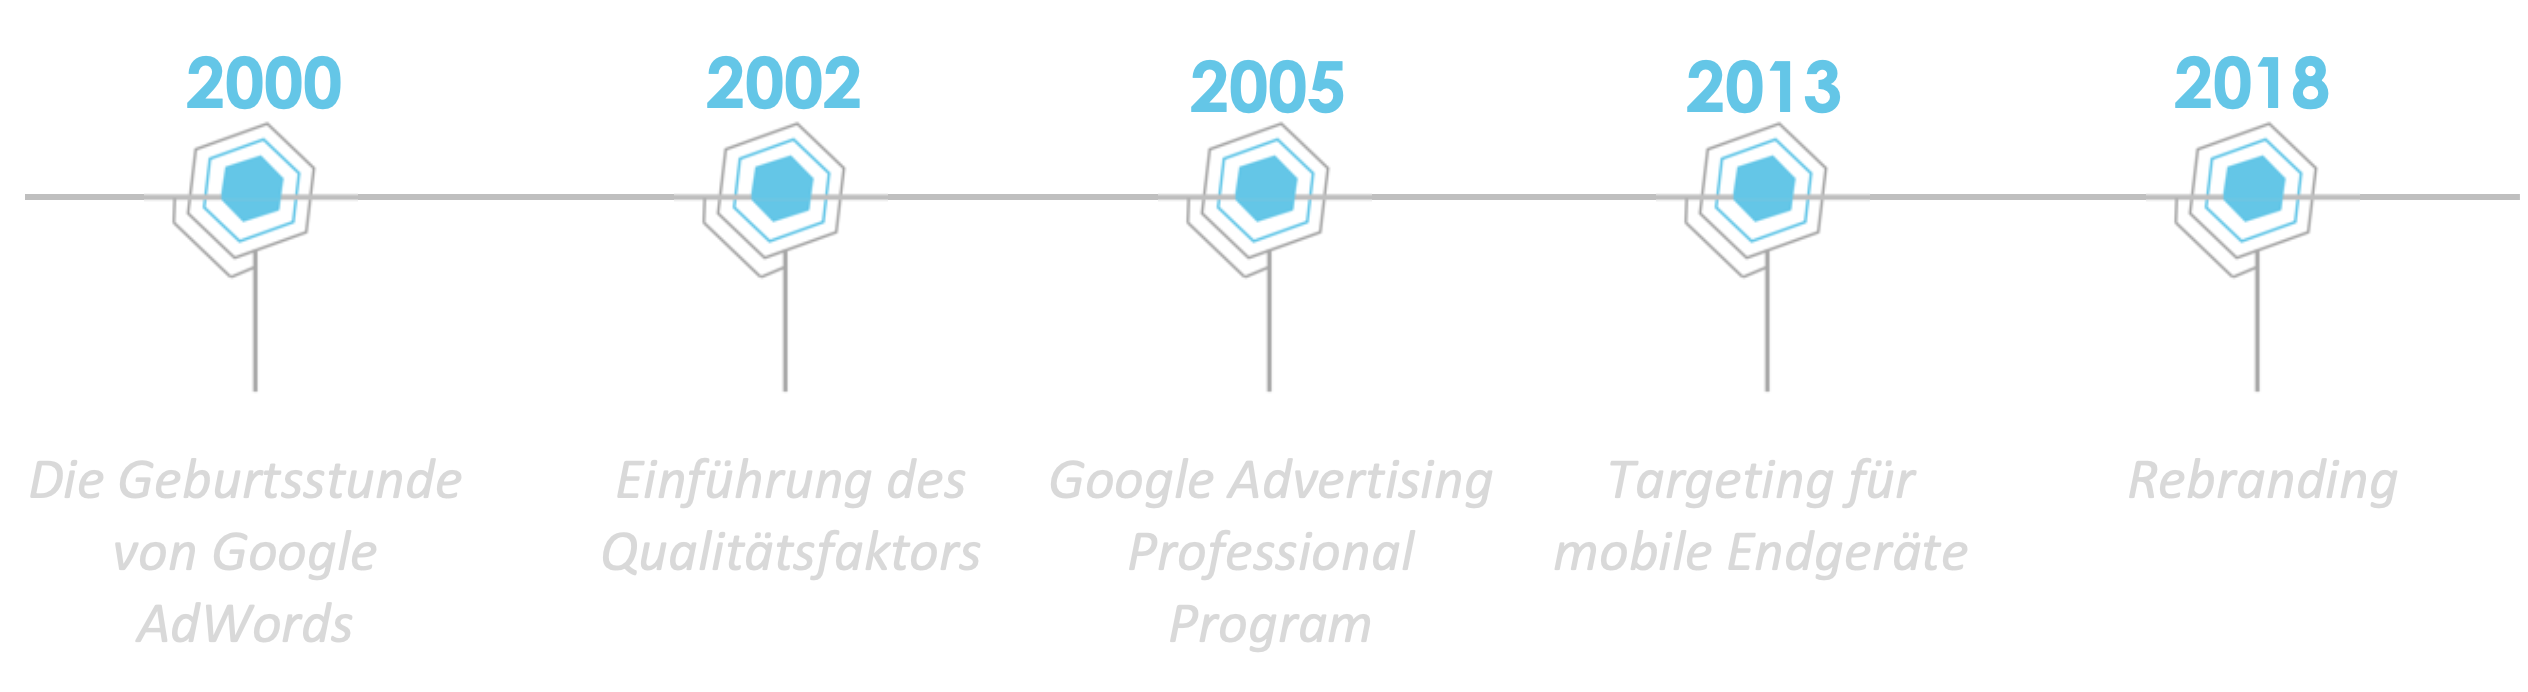 Der Google Ads Zeitstrahl zeigt die wichtigsten Daten auf einen Blick:
2000: Gründung von Google Ads
2002: Einführung des Qualitätsfaktors
2005: Google Advertising Professional Program
2013: Targeting für mobile Endgeräte
2018: Rebranding